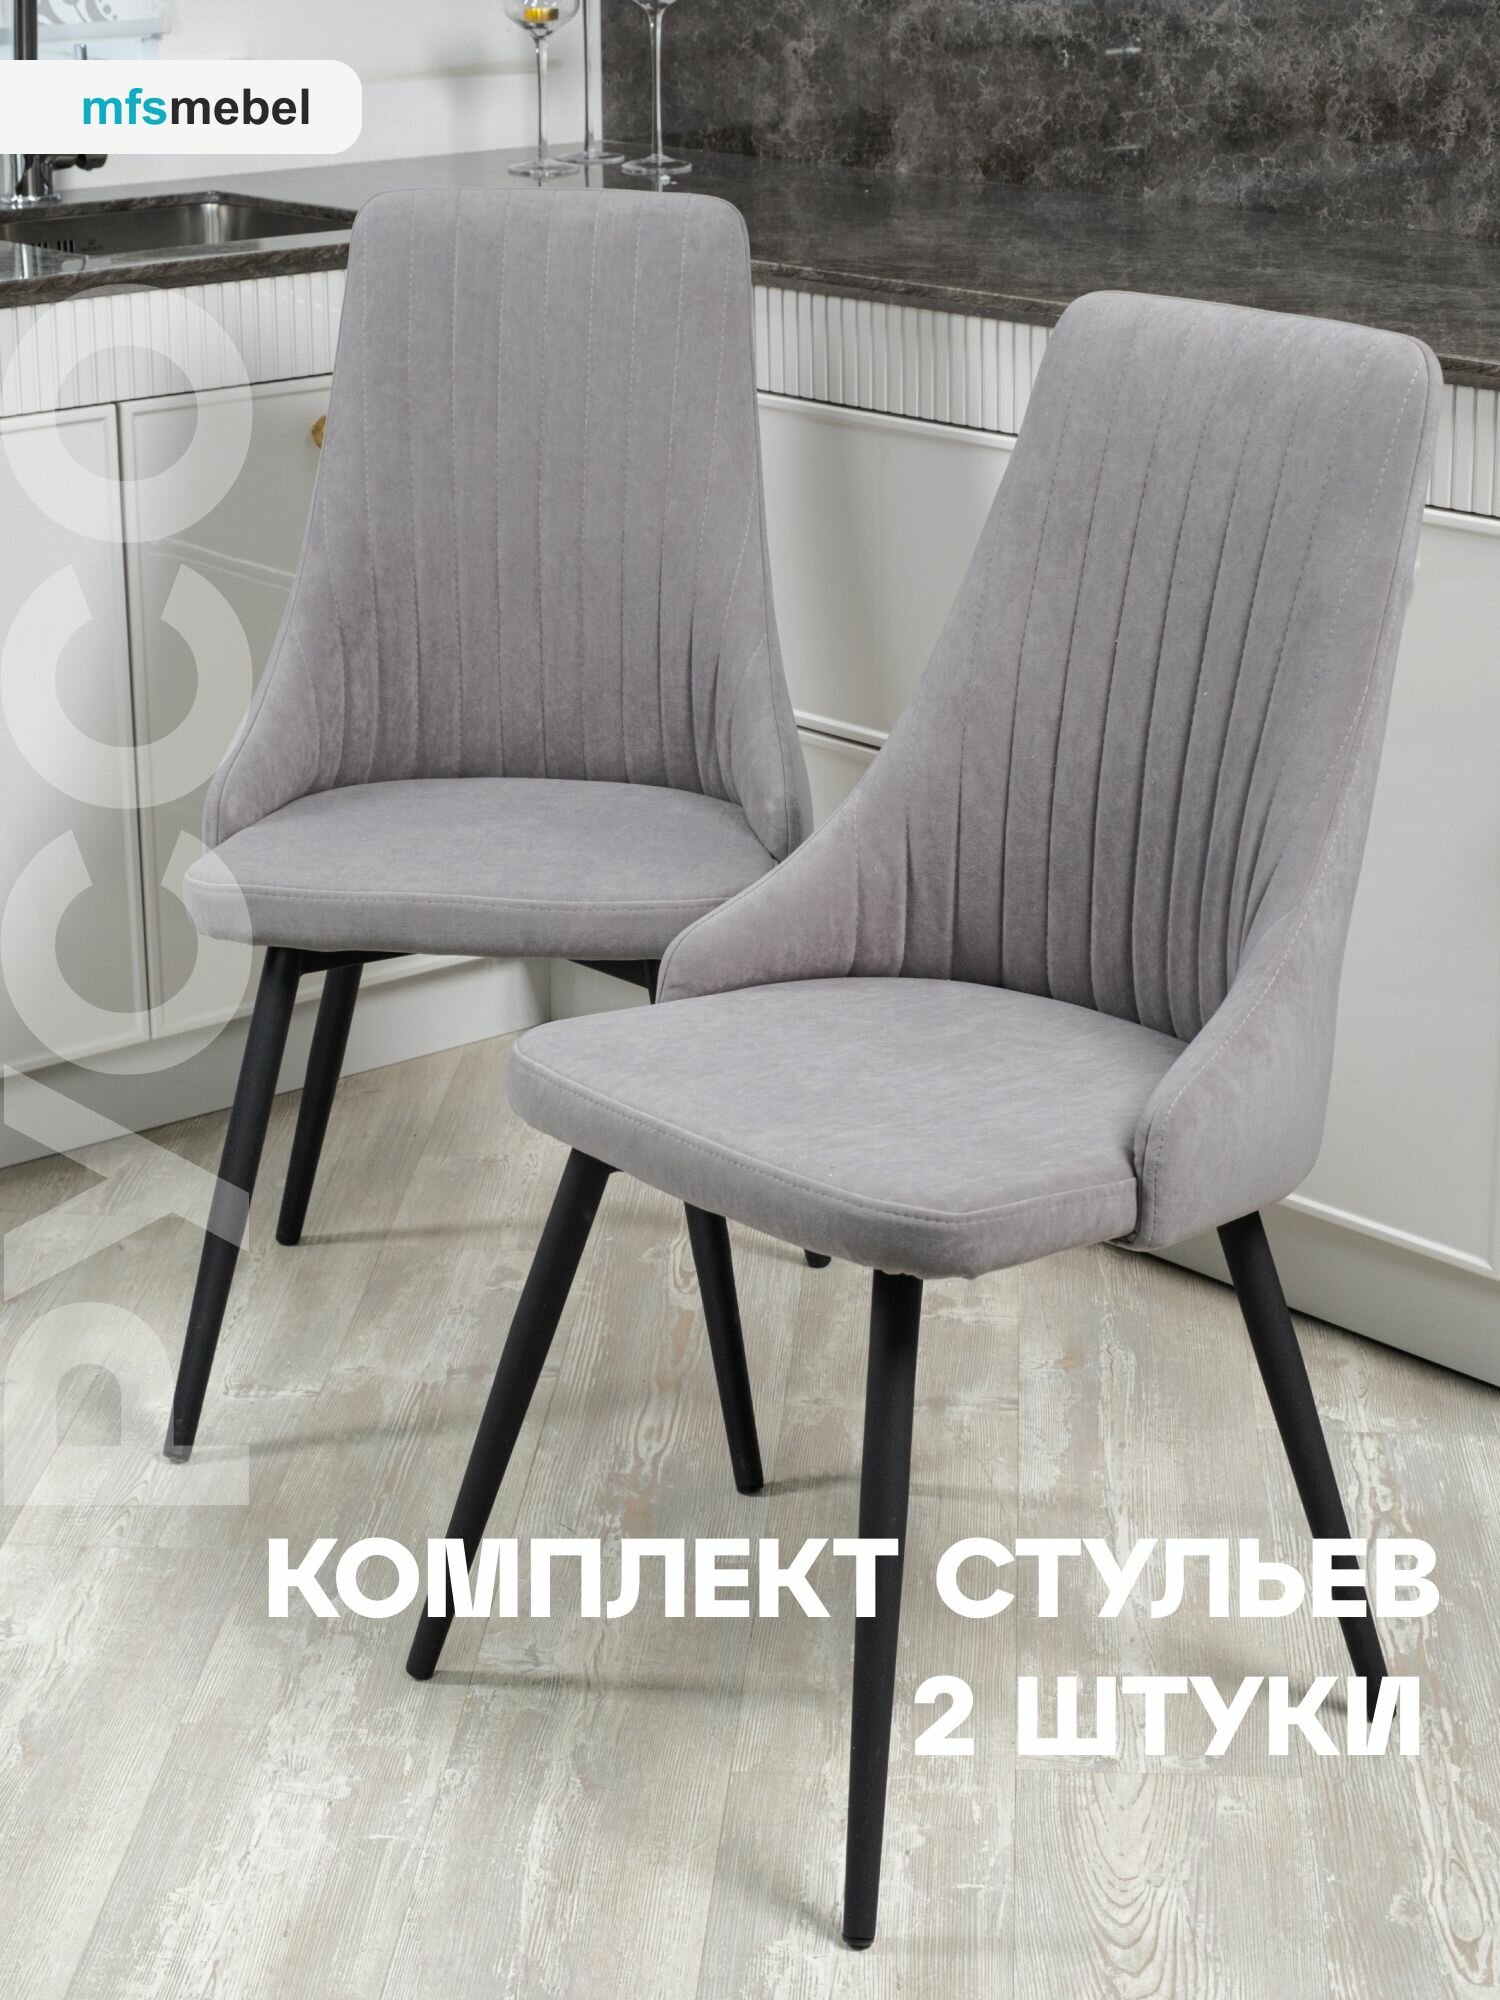 Комплект стульев для кухни Руссо темно-серый, стулья кухонные 2 штуки